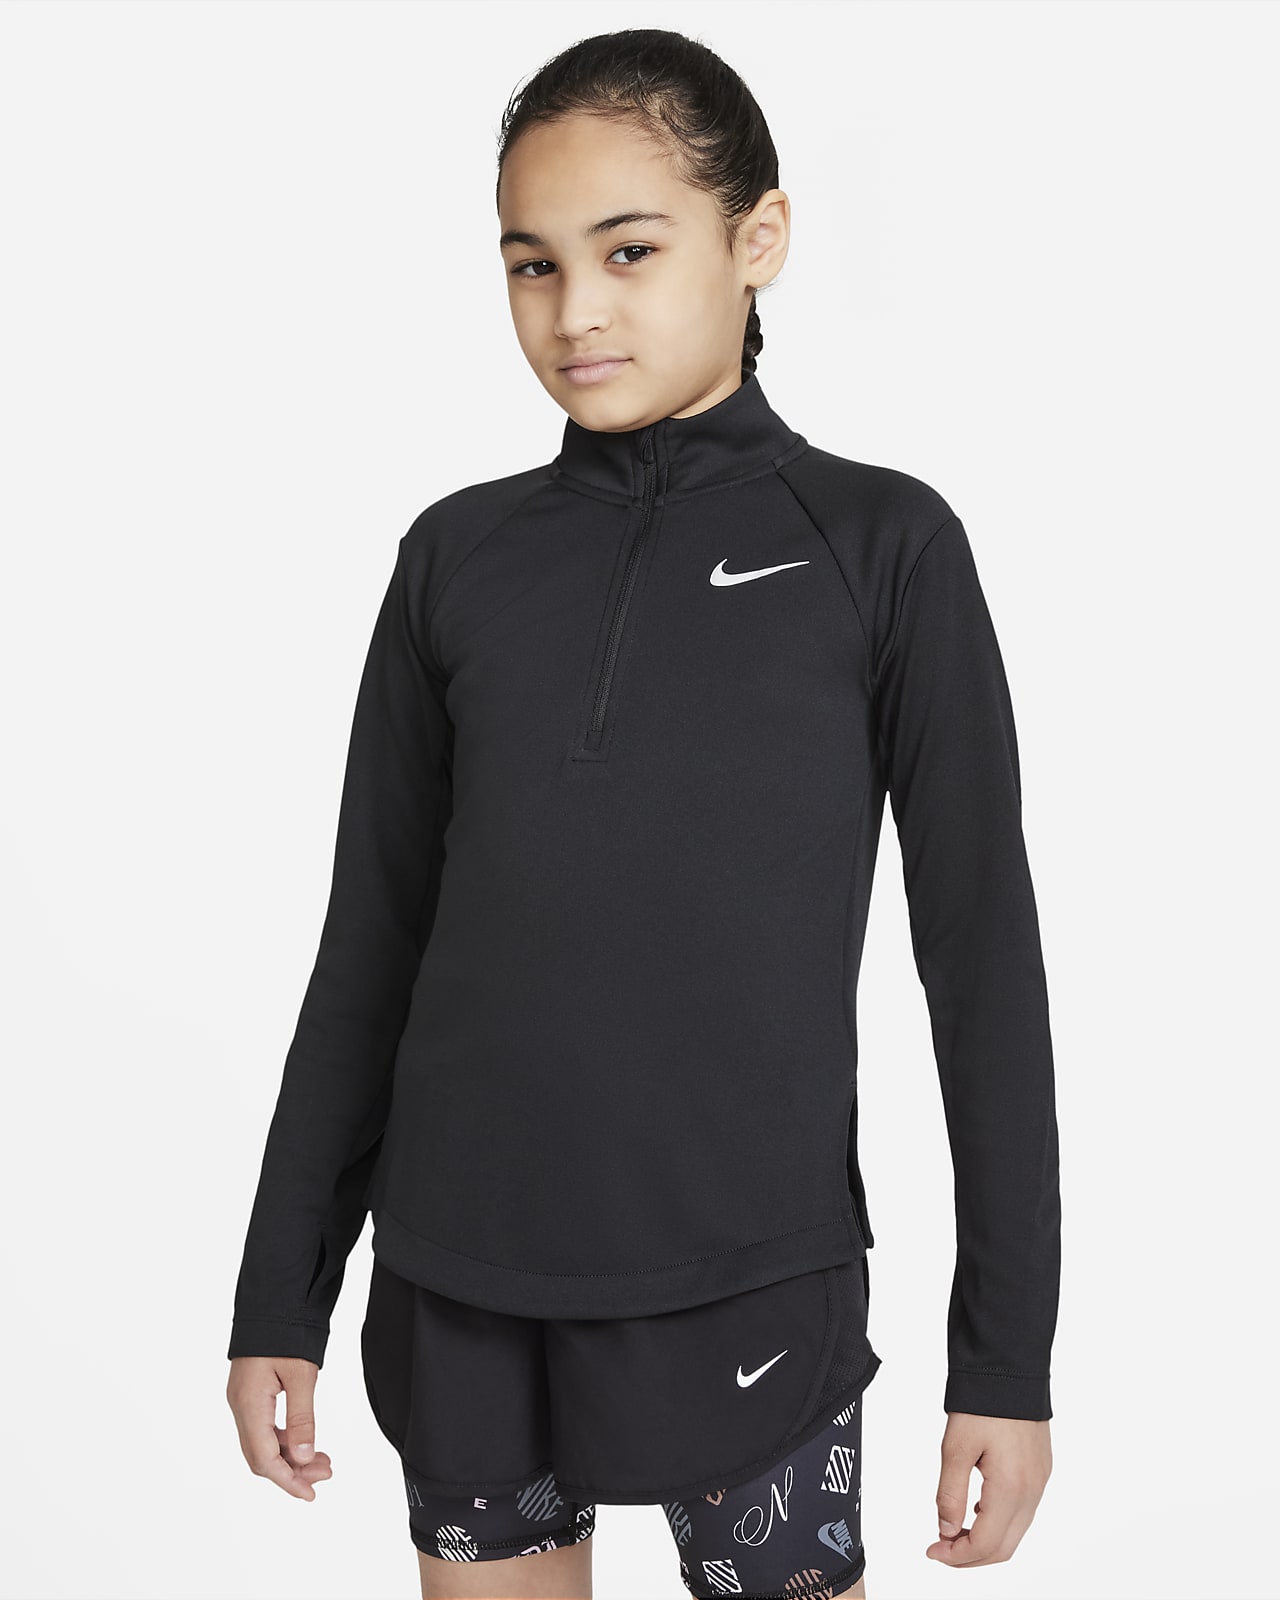 Μακρυμάνικη μπλούζα για τρέξιμο Nike Dri-FIT για μεγάλα κορίτσια